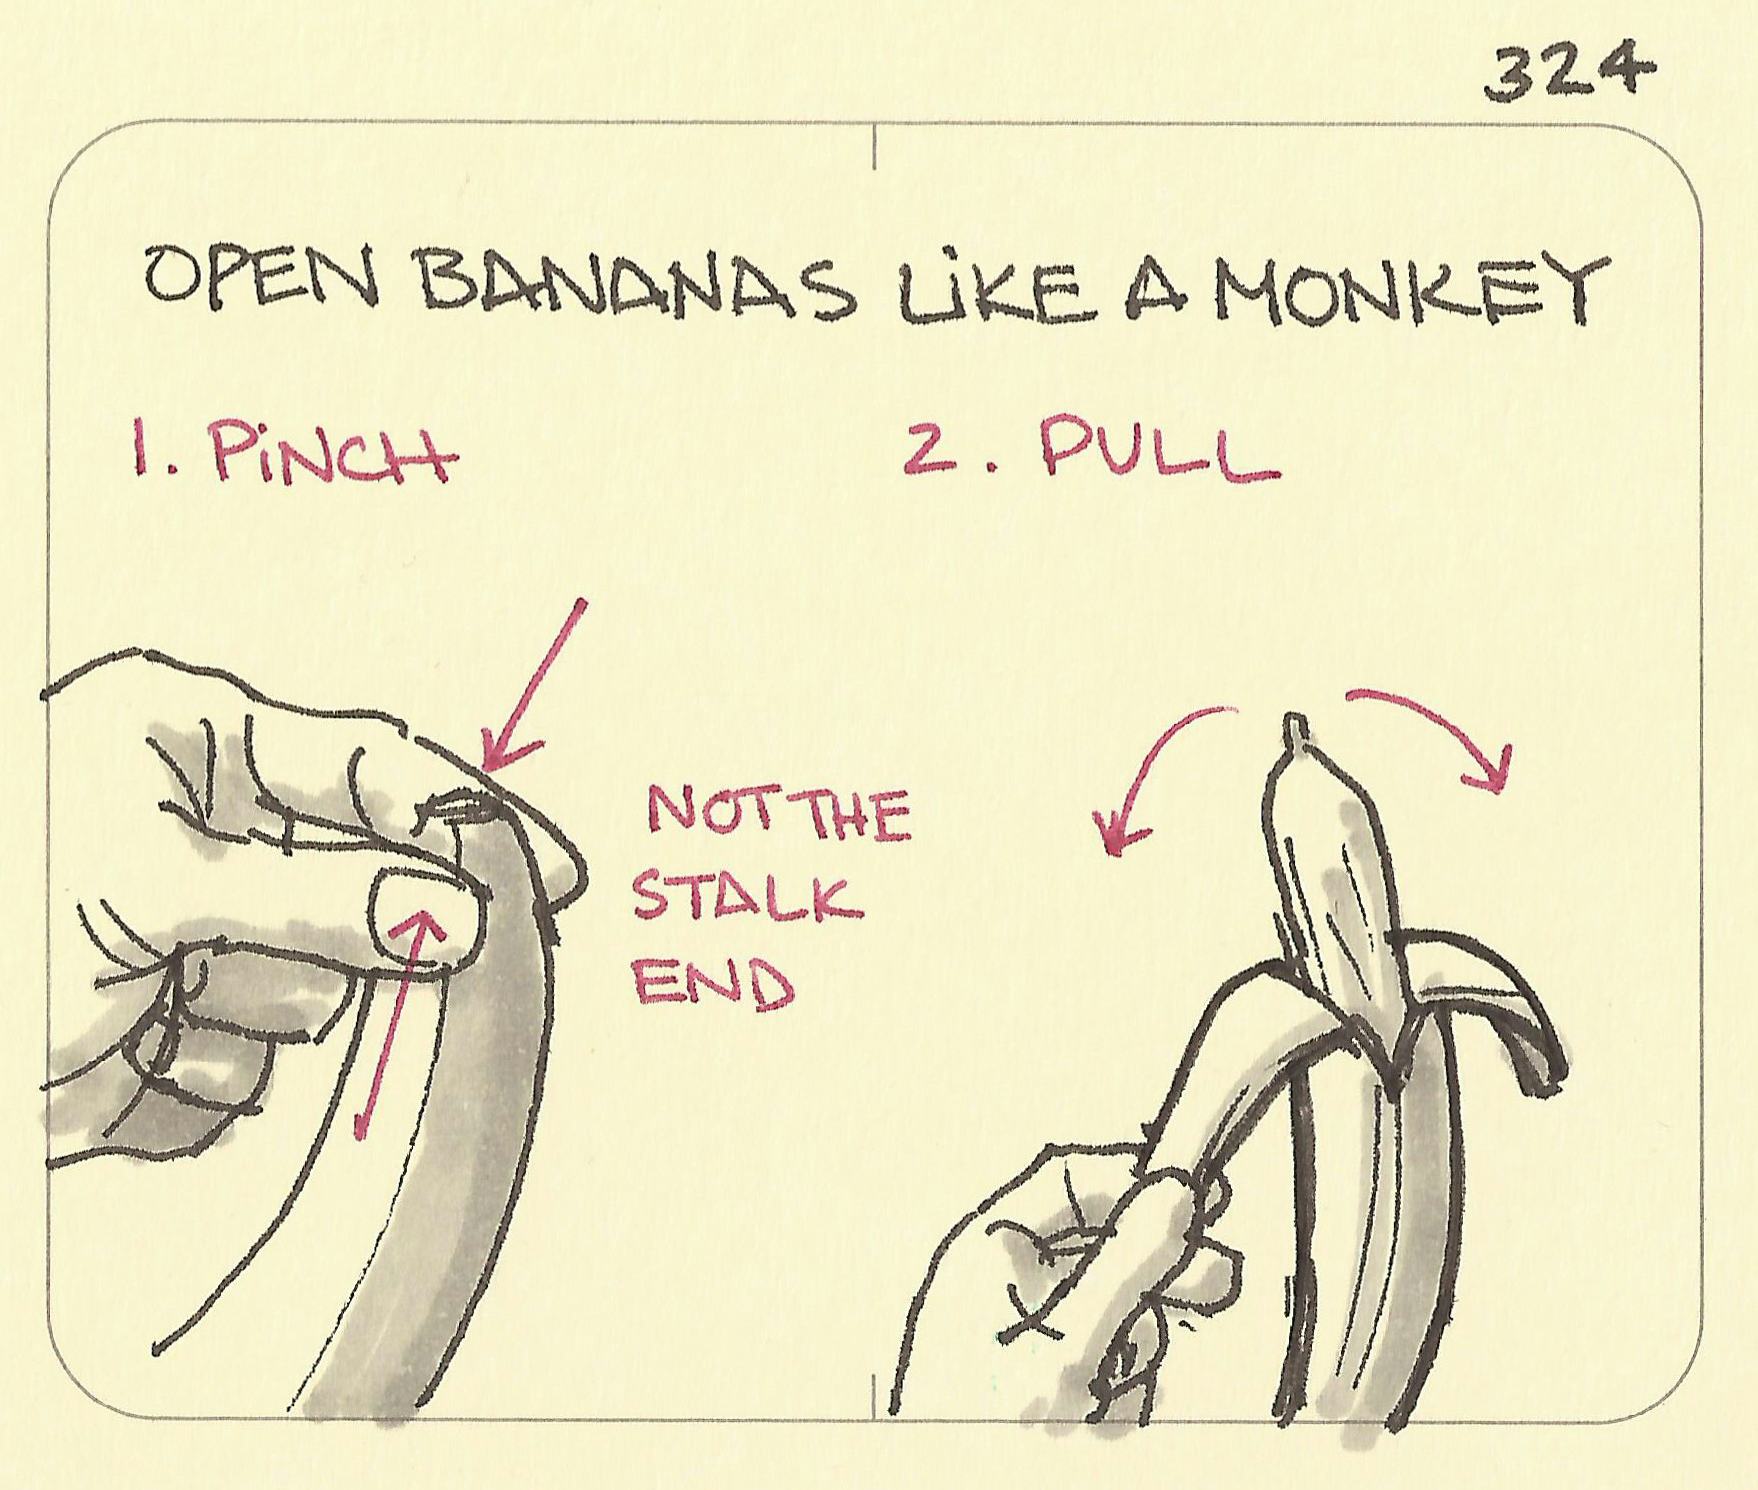 Open bananas like a monkey - Sketchplanations